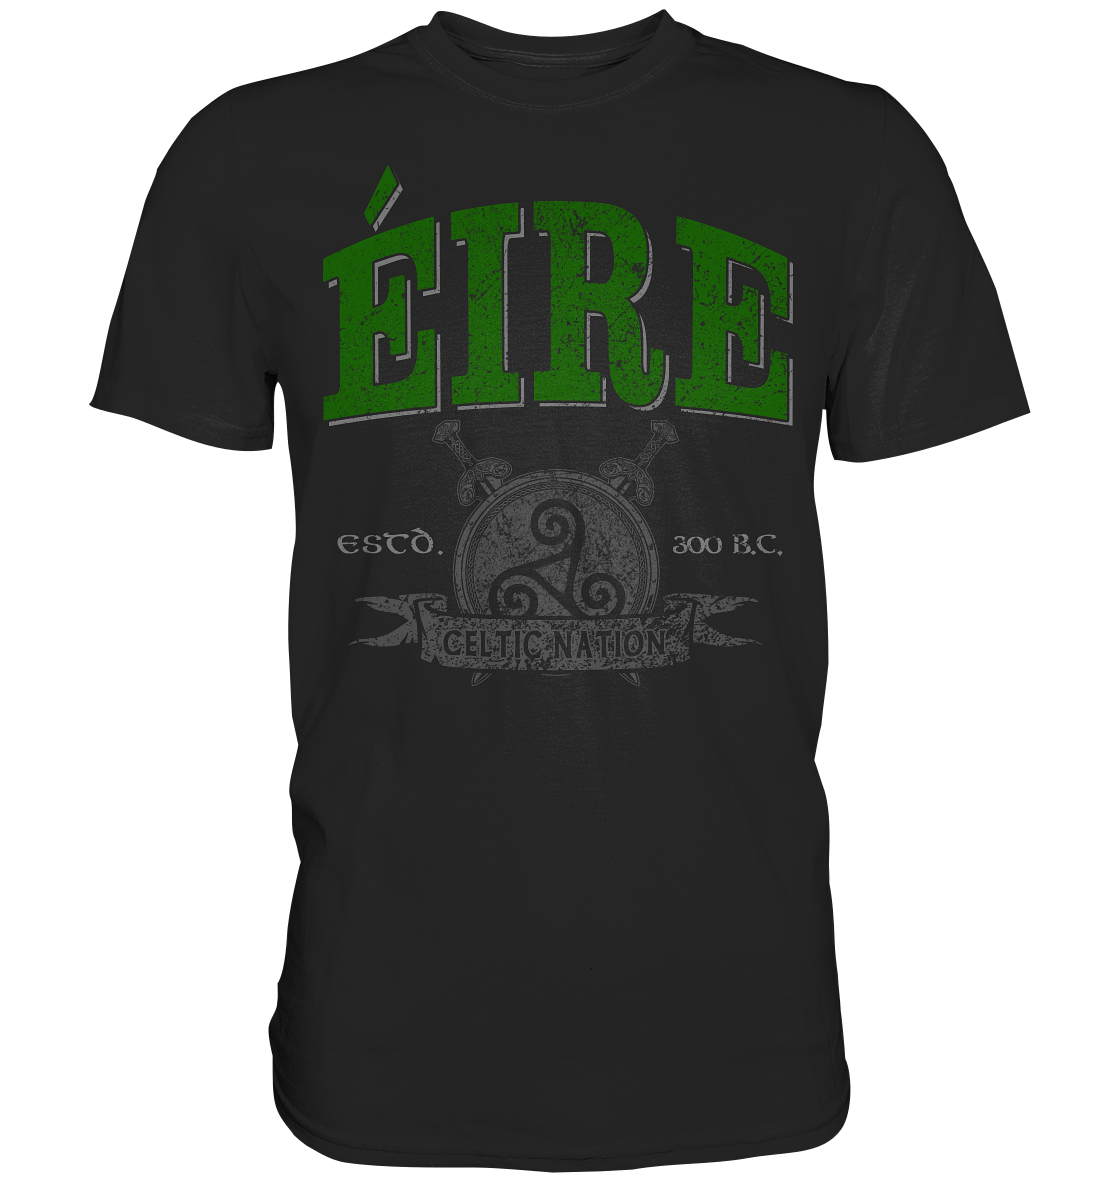 Éire "Celtic Nation" - Premium Shirt